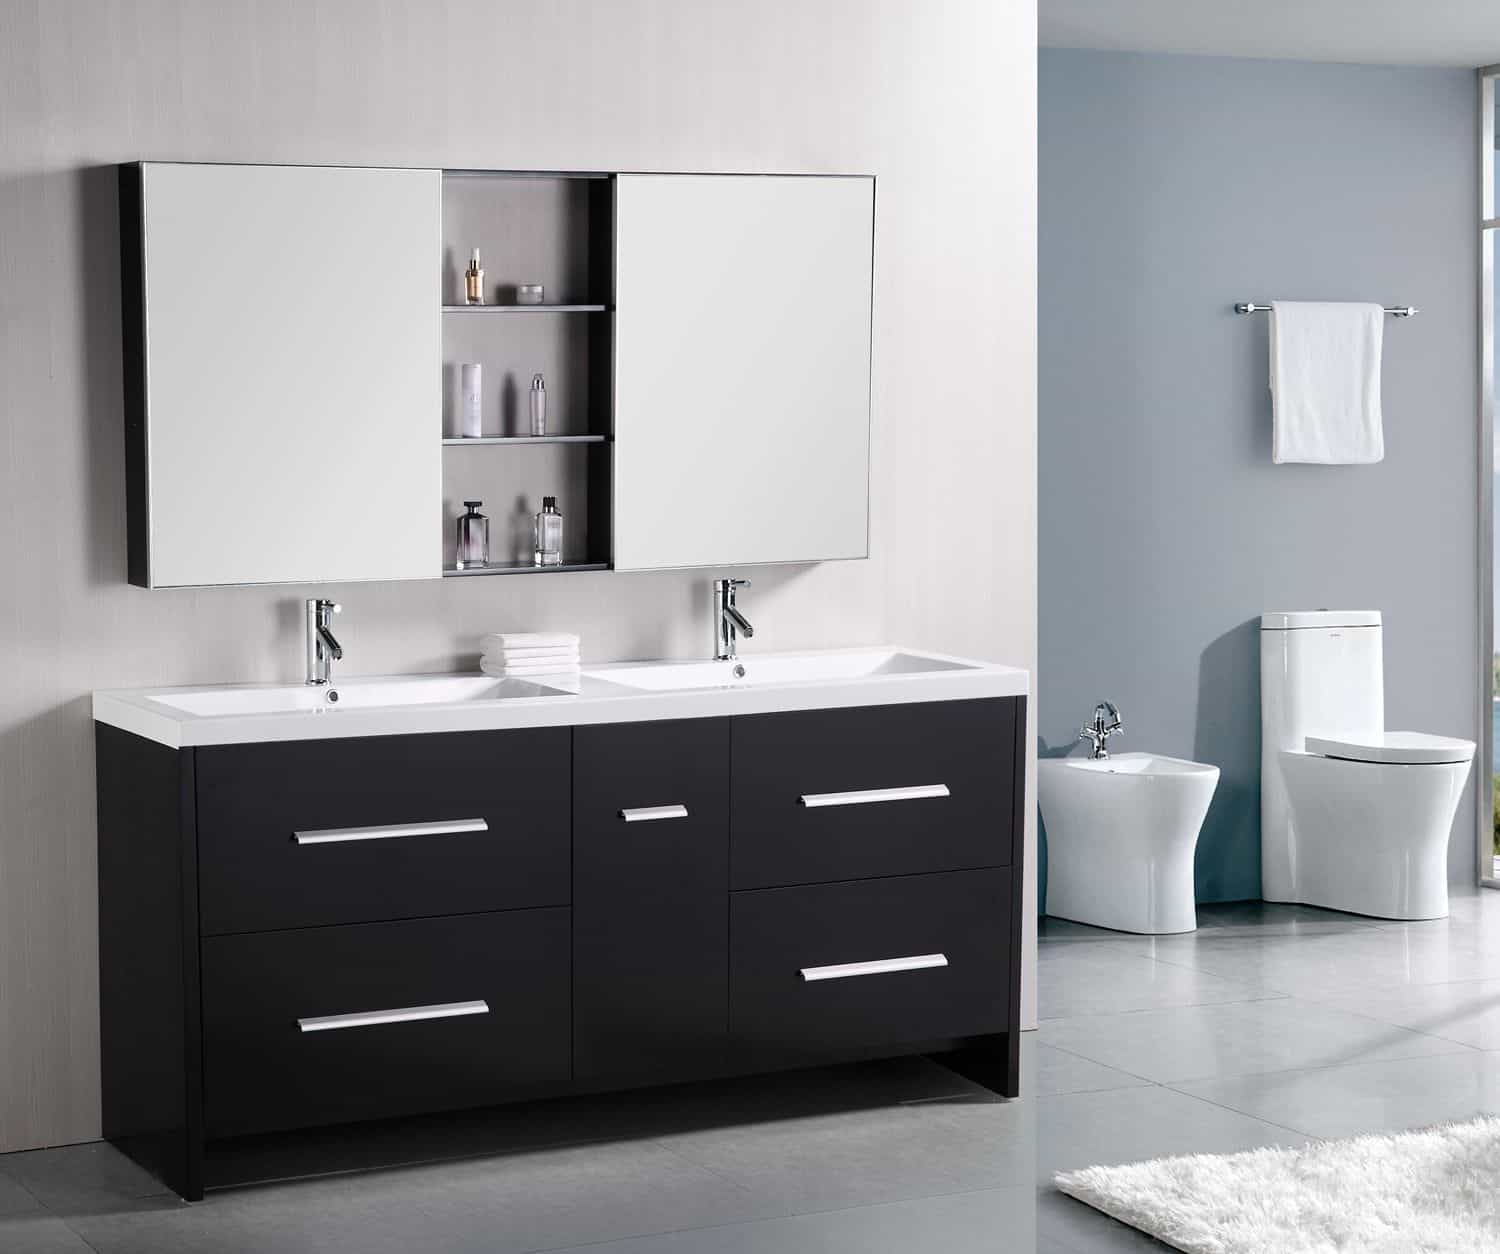 Мебель ванной 90. 72 Inch Double Sink Bathroom Vanity. Мебель для ванной комнаты. Раковина со шкафом. Мебель для ванной комнаты Тритон.